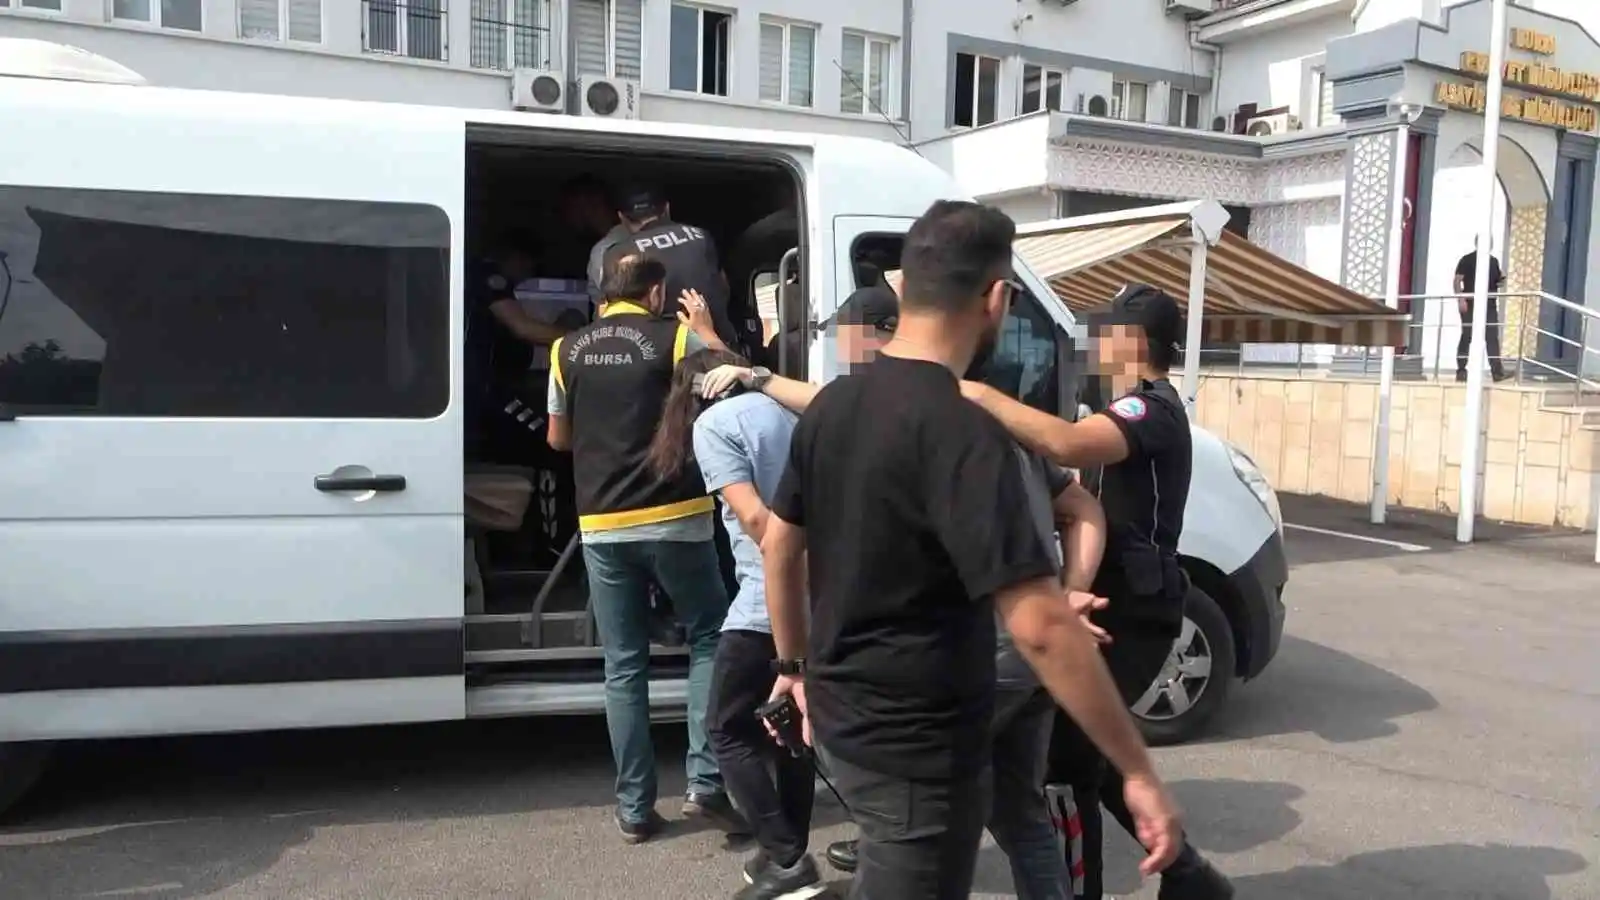 Bursa’da cinayet işleyip İzmir’e kaçan şüphelilerden 3’ü yakalandı
